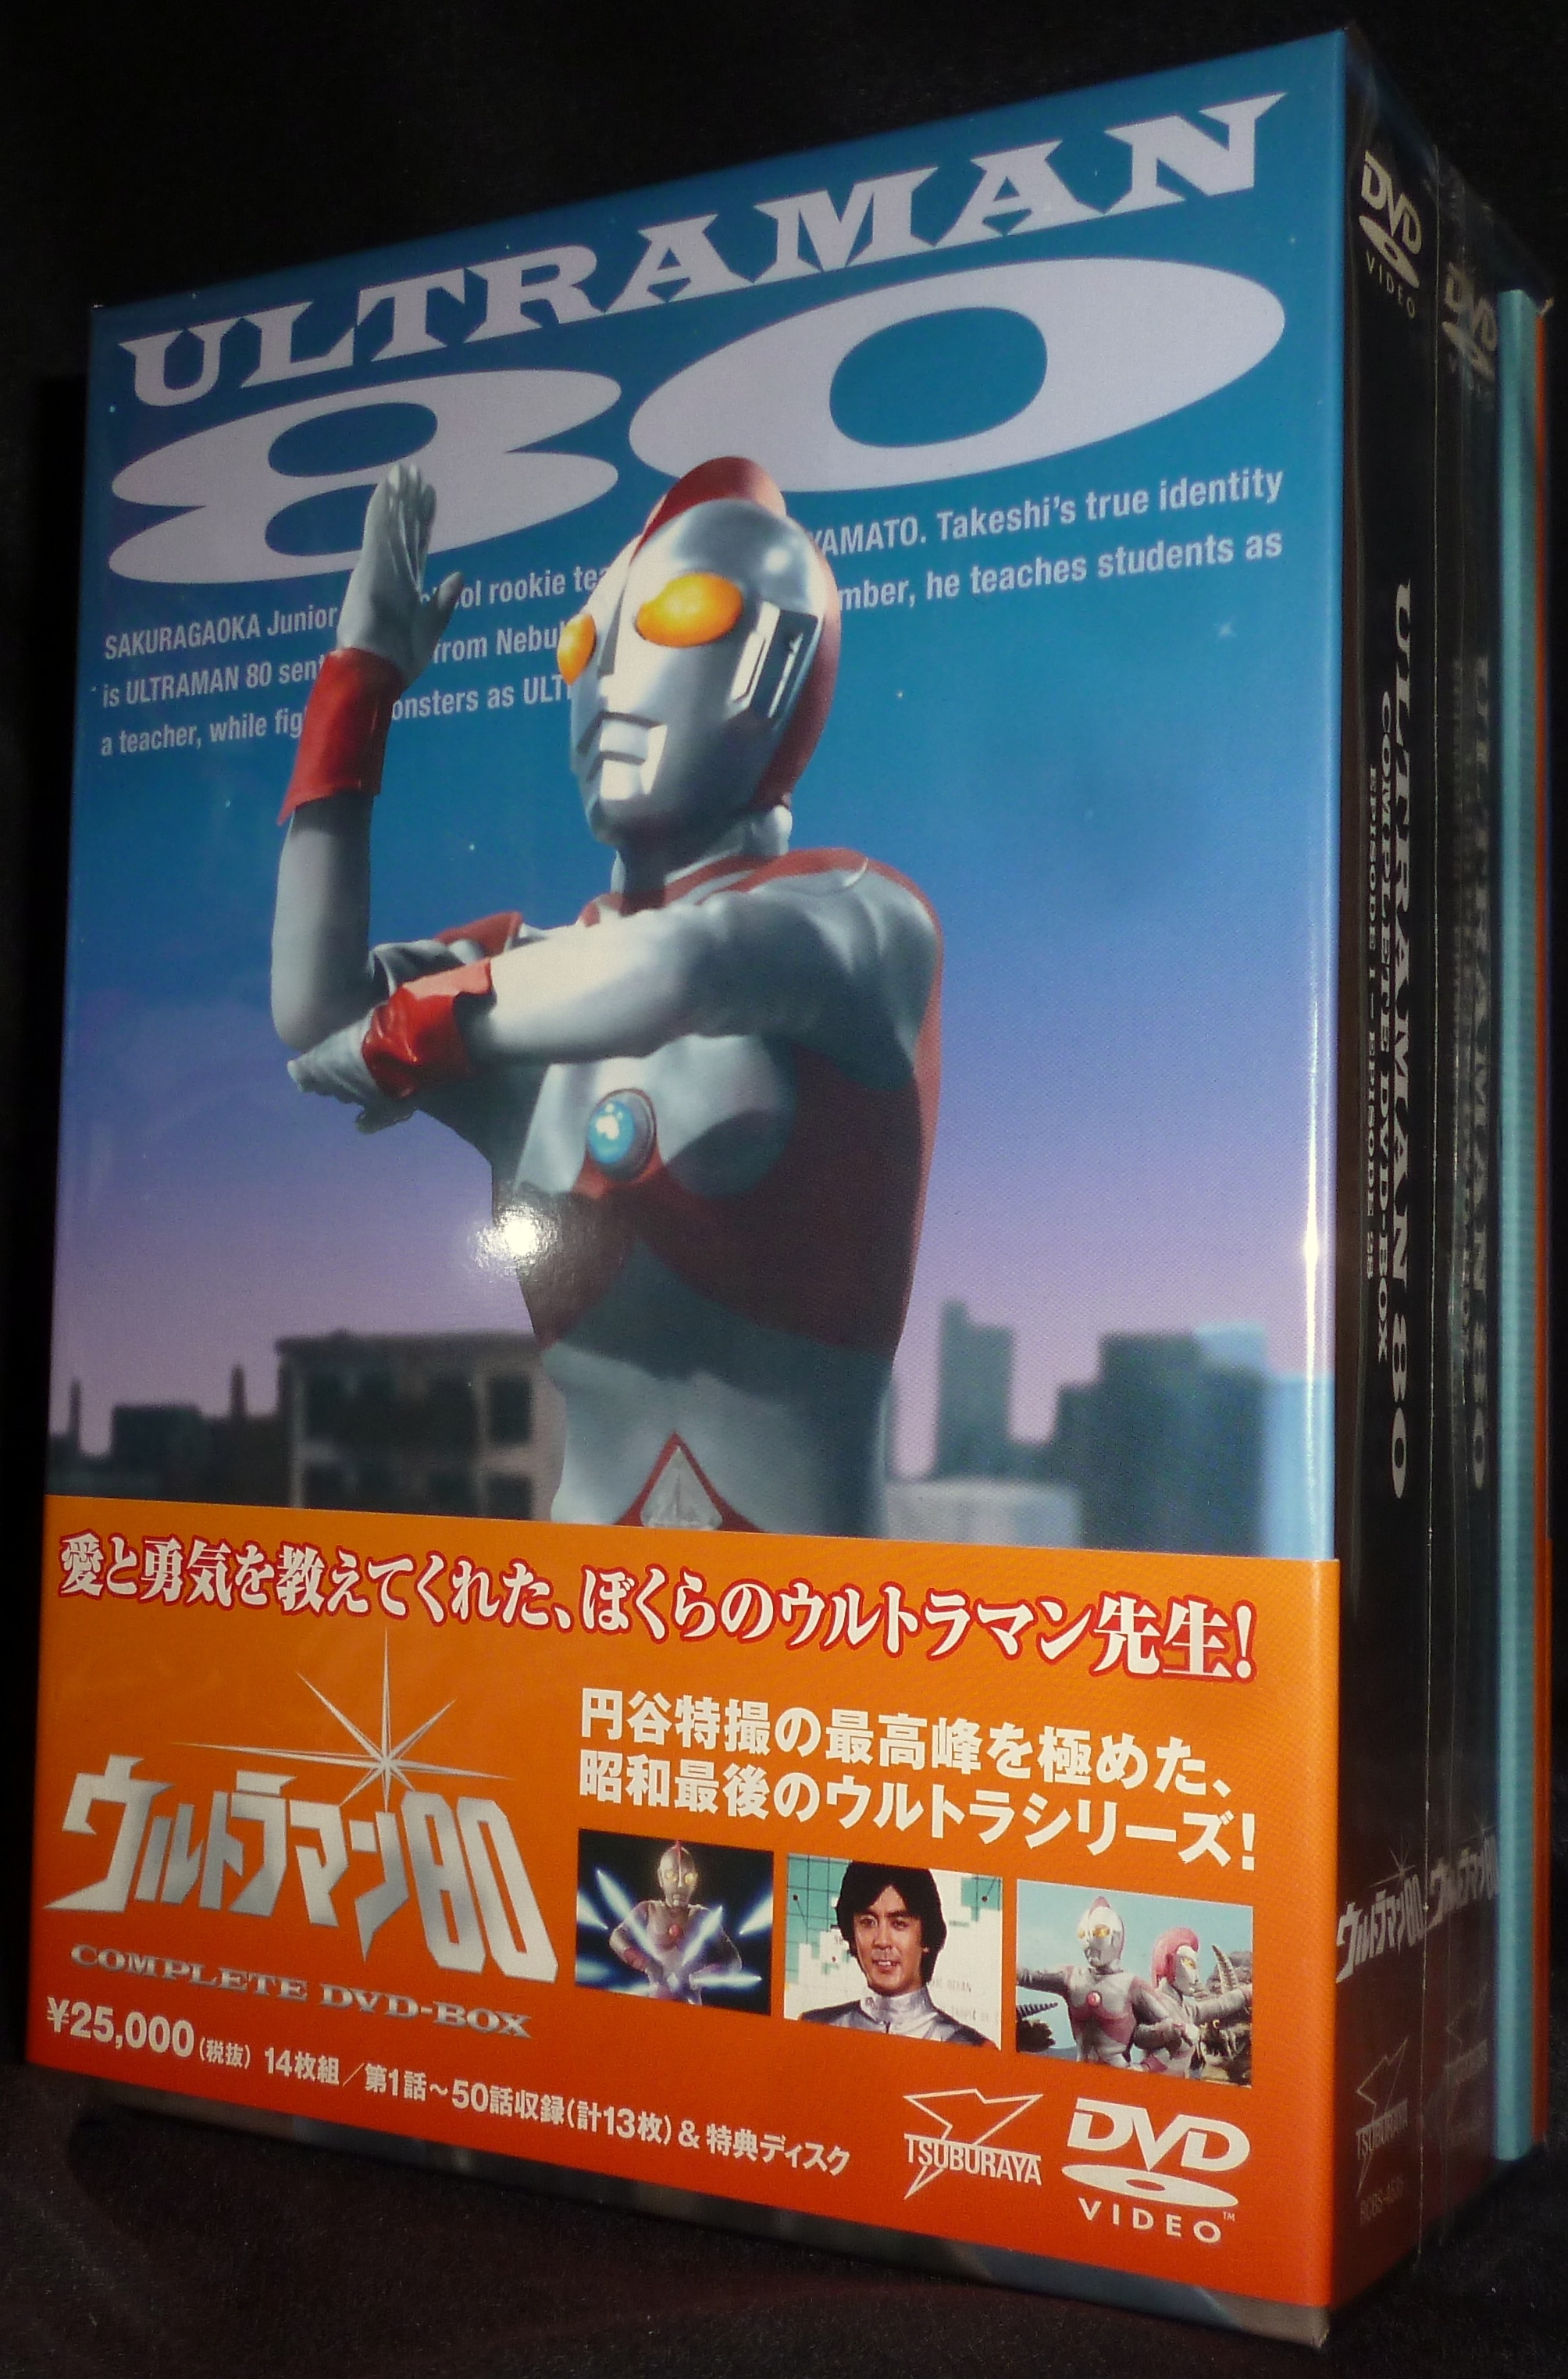 ウルトラマンA(エース) コンプリート DVD-BOX〈初回限定生産・14枚組〉